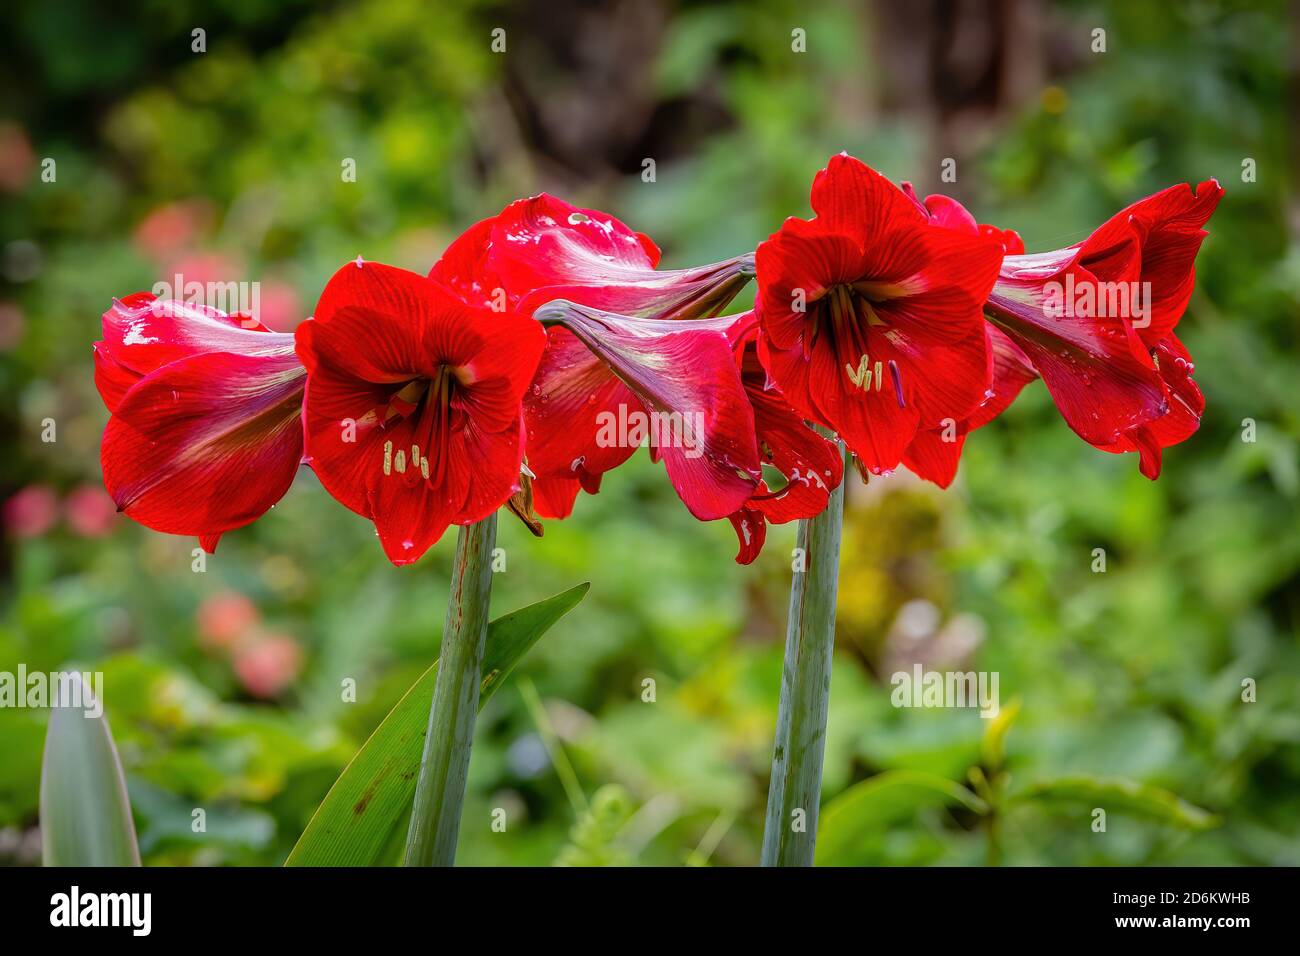 Amaryllis flower Stock Photo